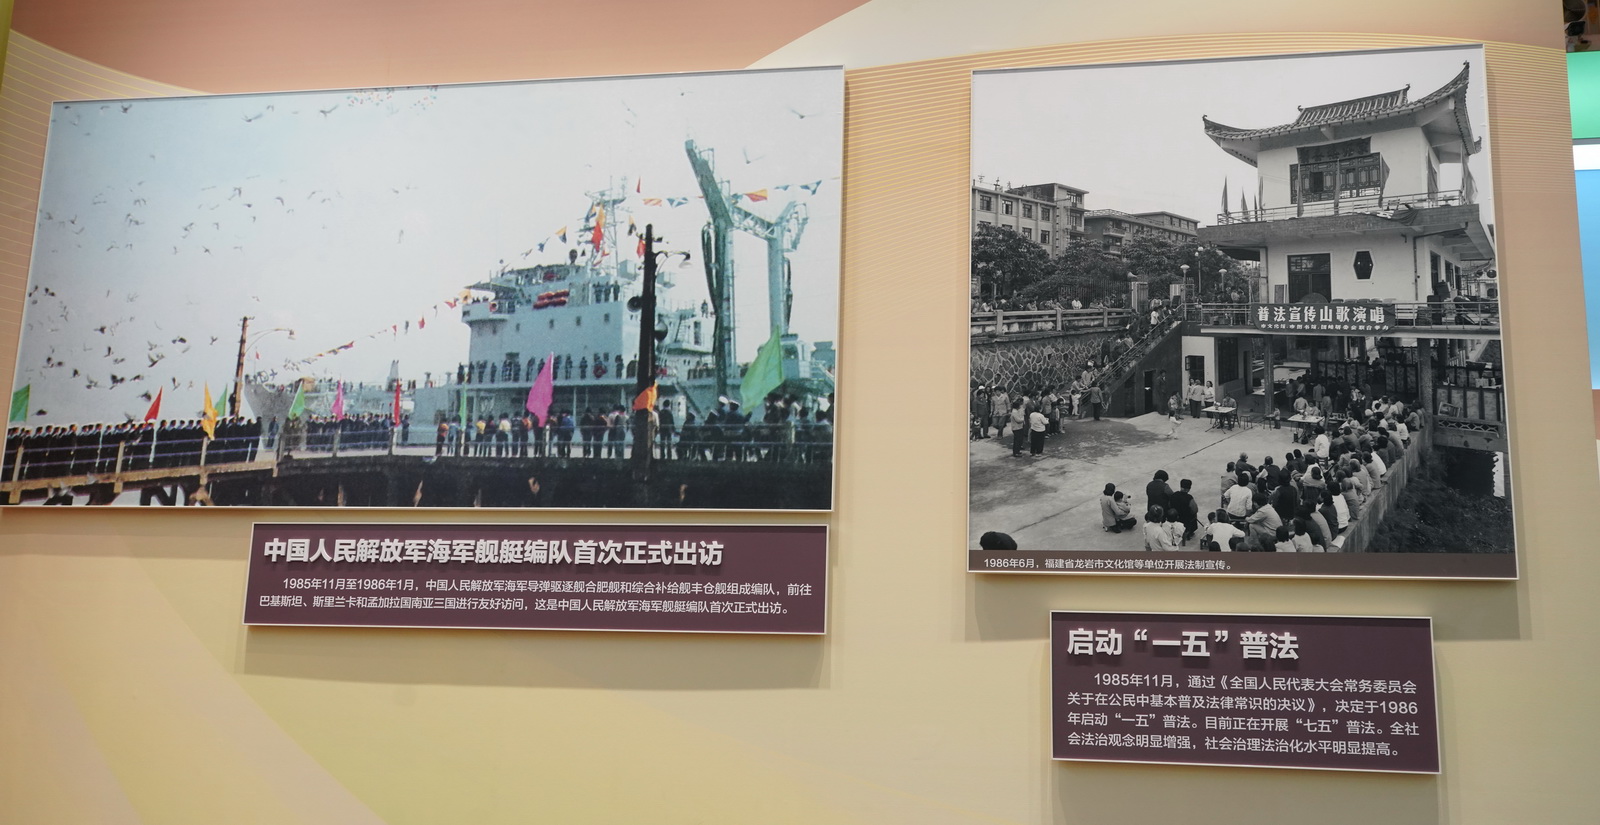 中國人民解放軍海軍艦艇編隊首次正式出訪﹔啟動“一五”普法。